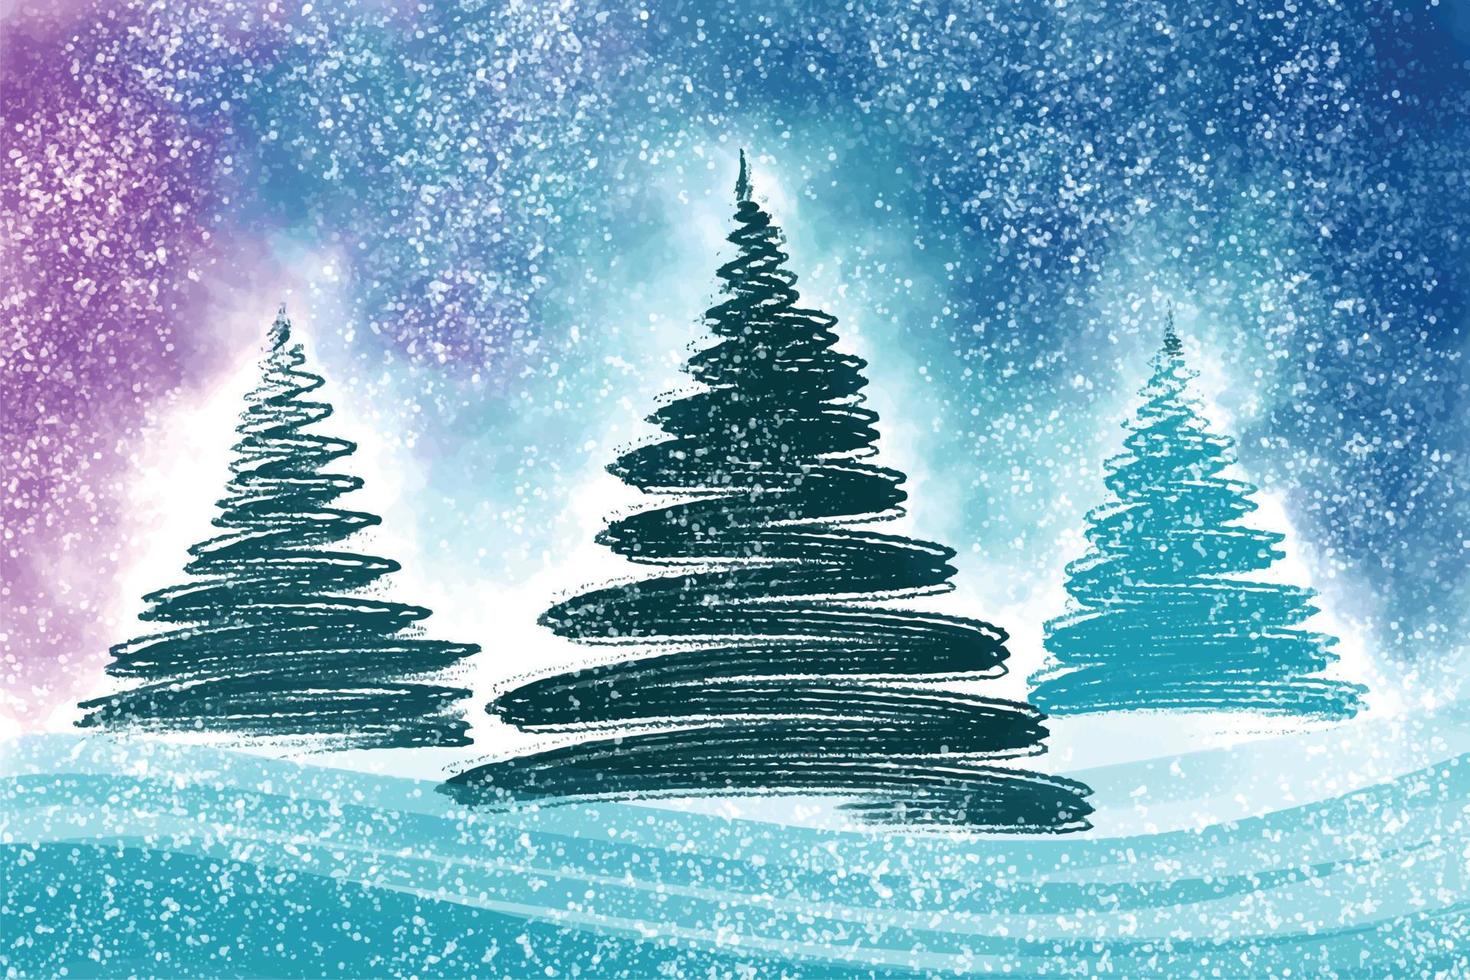 jul vinter- landskap av kall väder jul träd kort bakgrund vektor